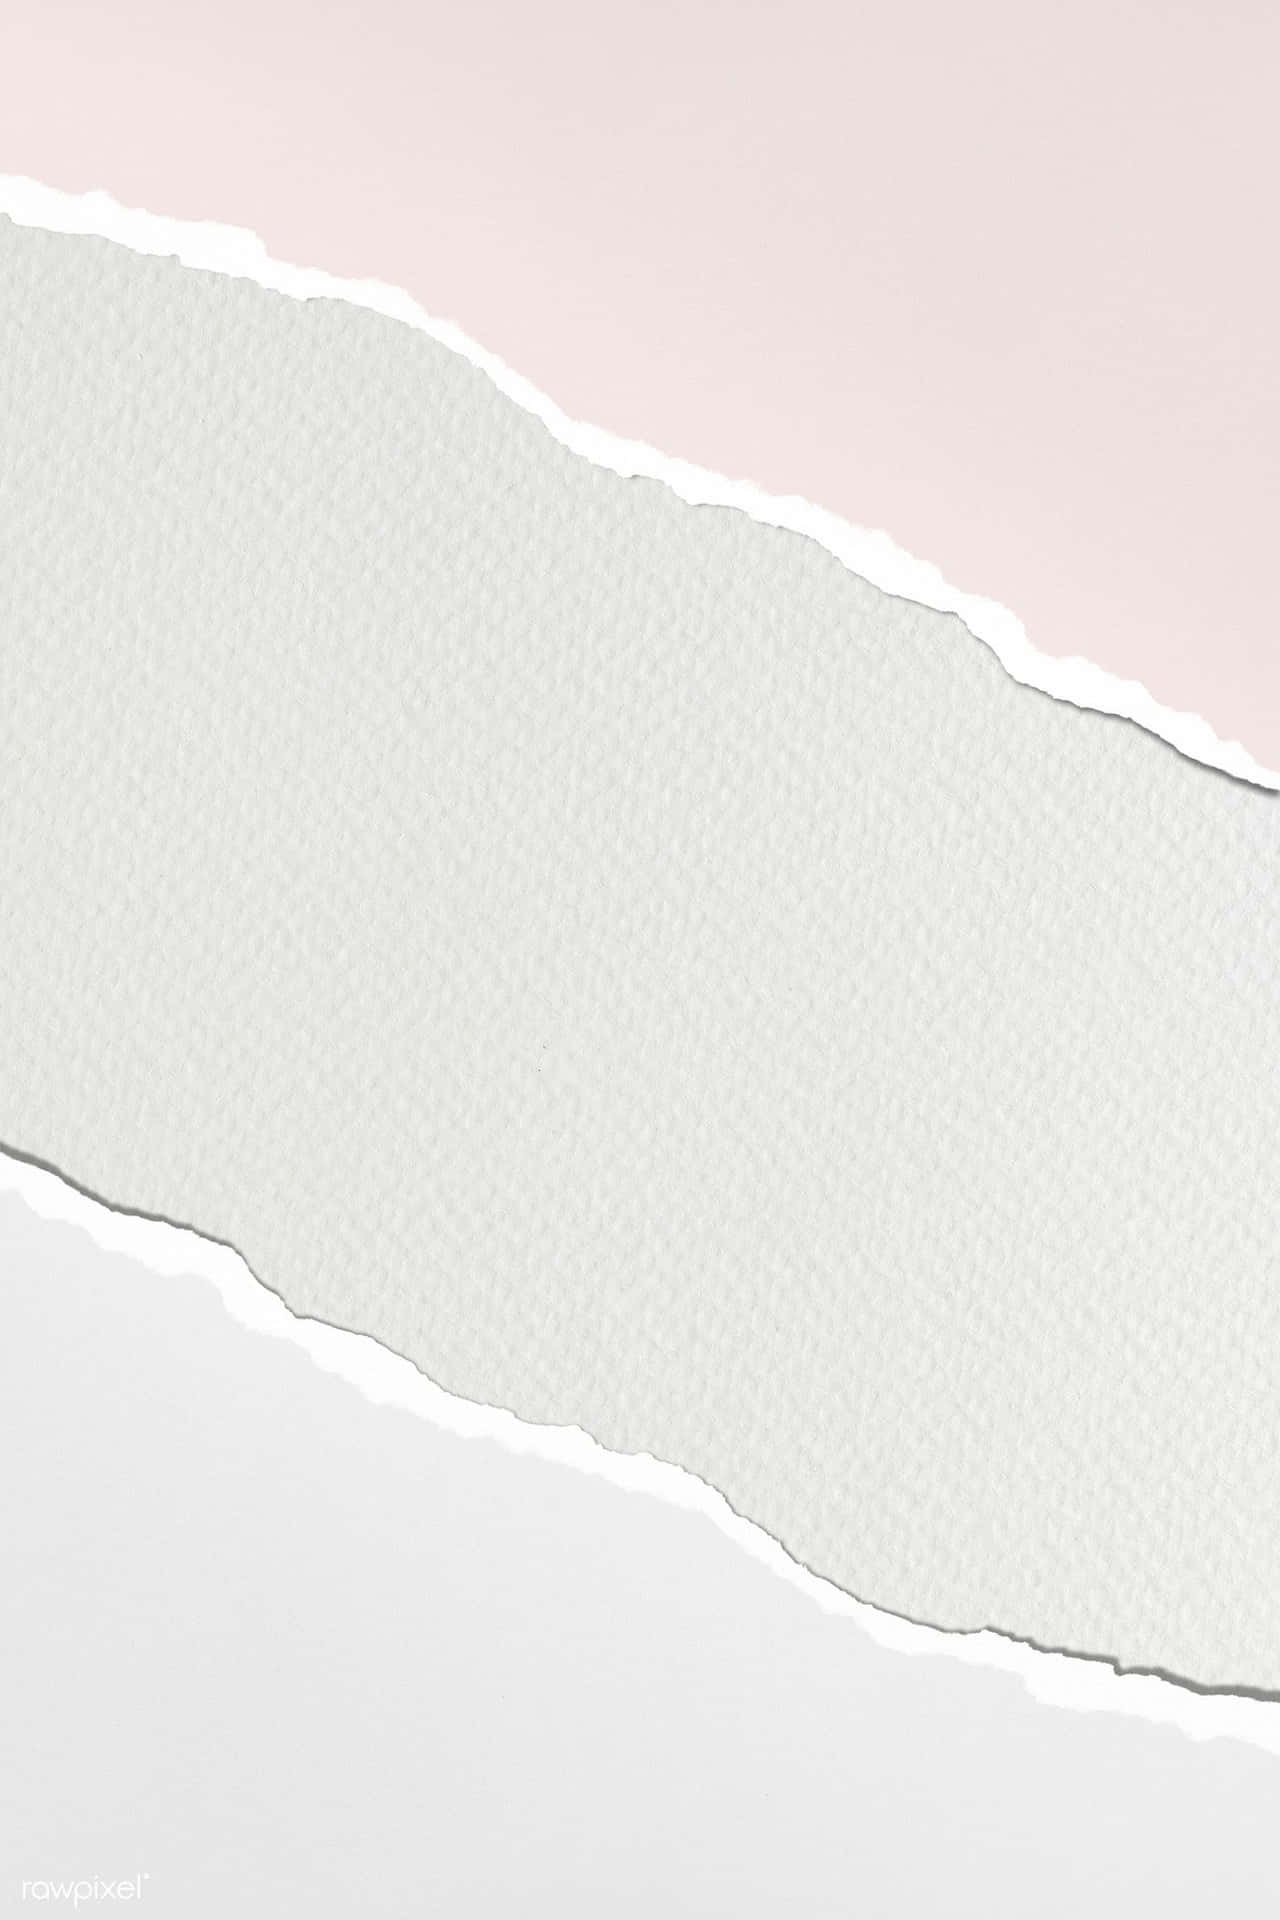 Zerissenepapiercollage Mit Pastellfarben Wallpaper